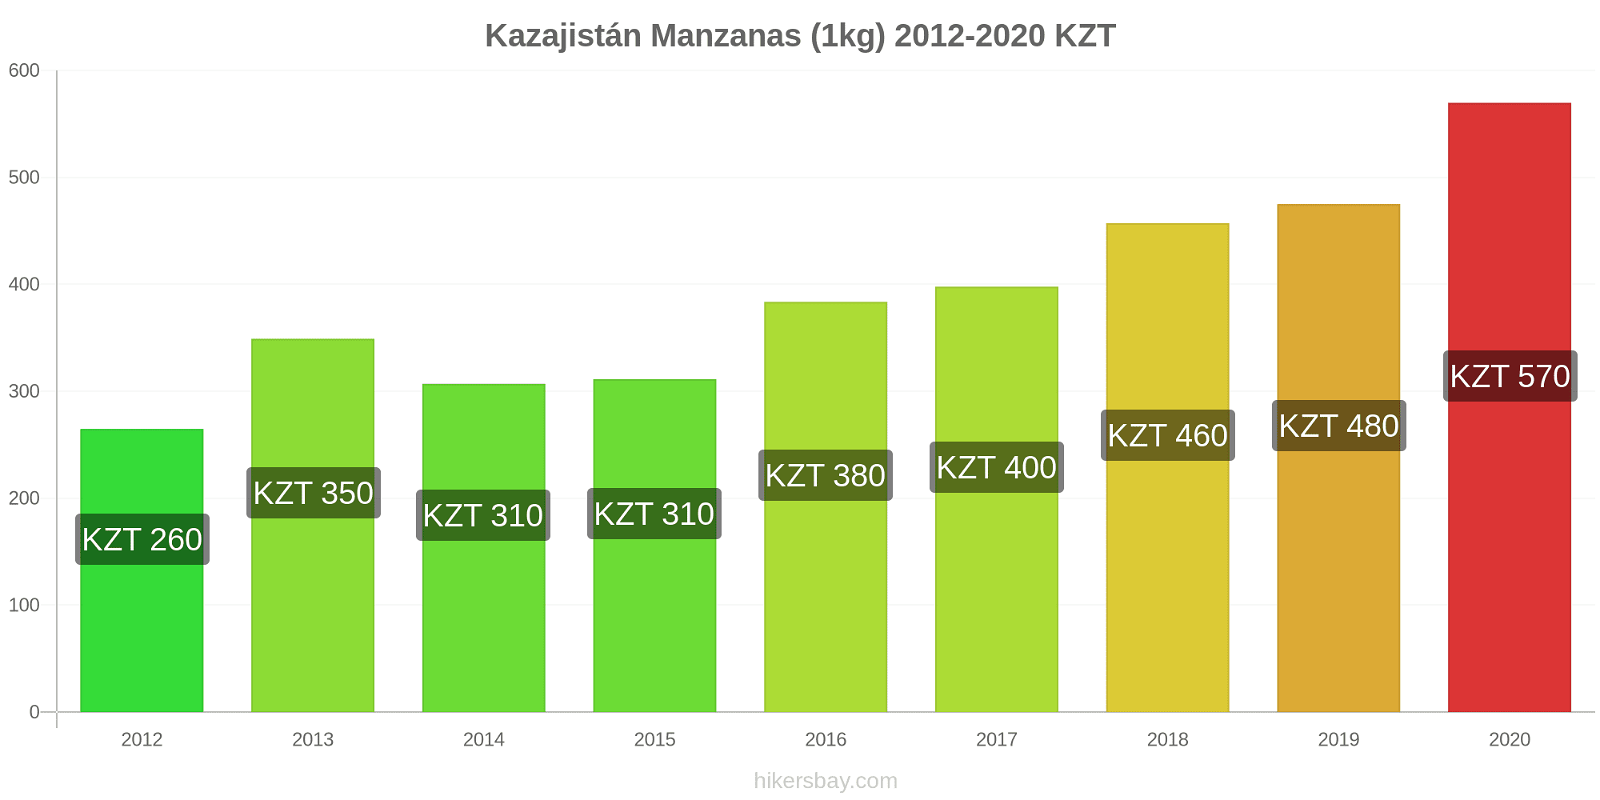 Kazajistán cambios de precios Manzanas (1kg) hikersbay.com